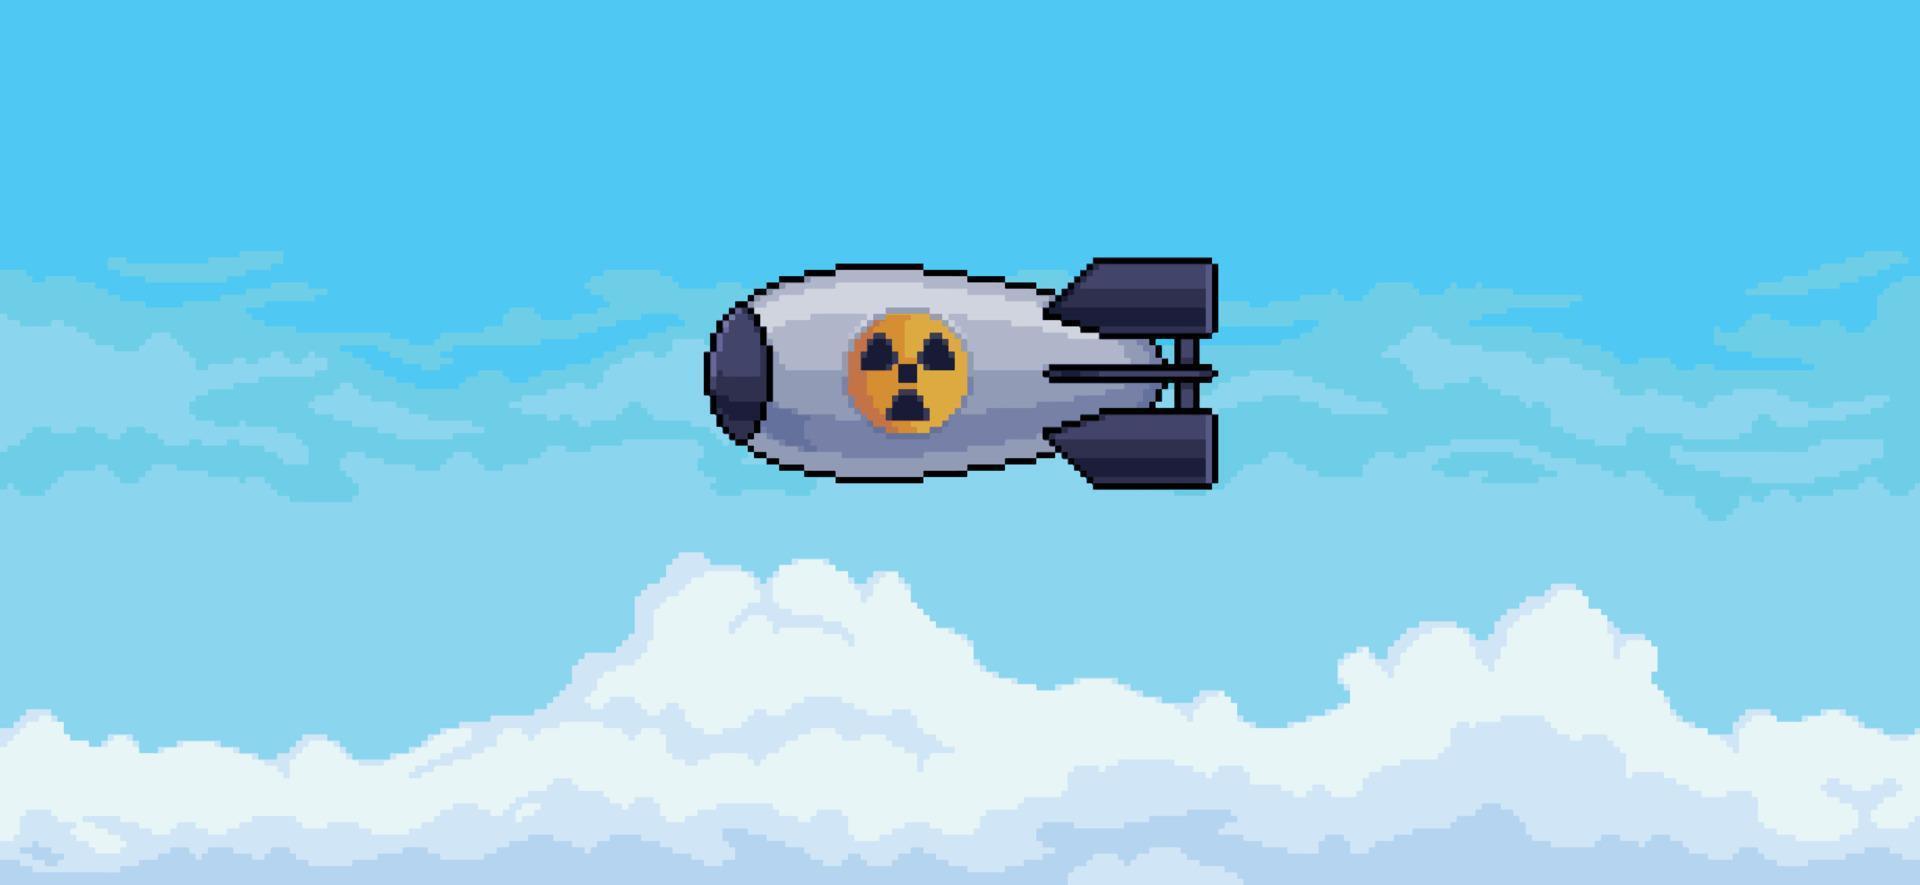 bombe atomique pixel art tombant du ciel bleu avec fond vectoriel de nuages pour le jeu 8bit